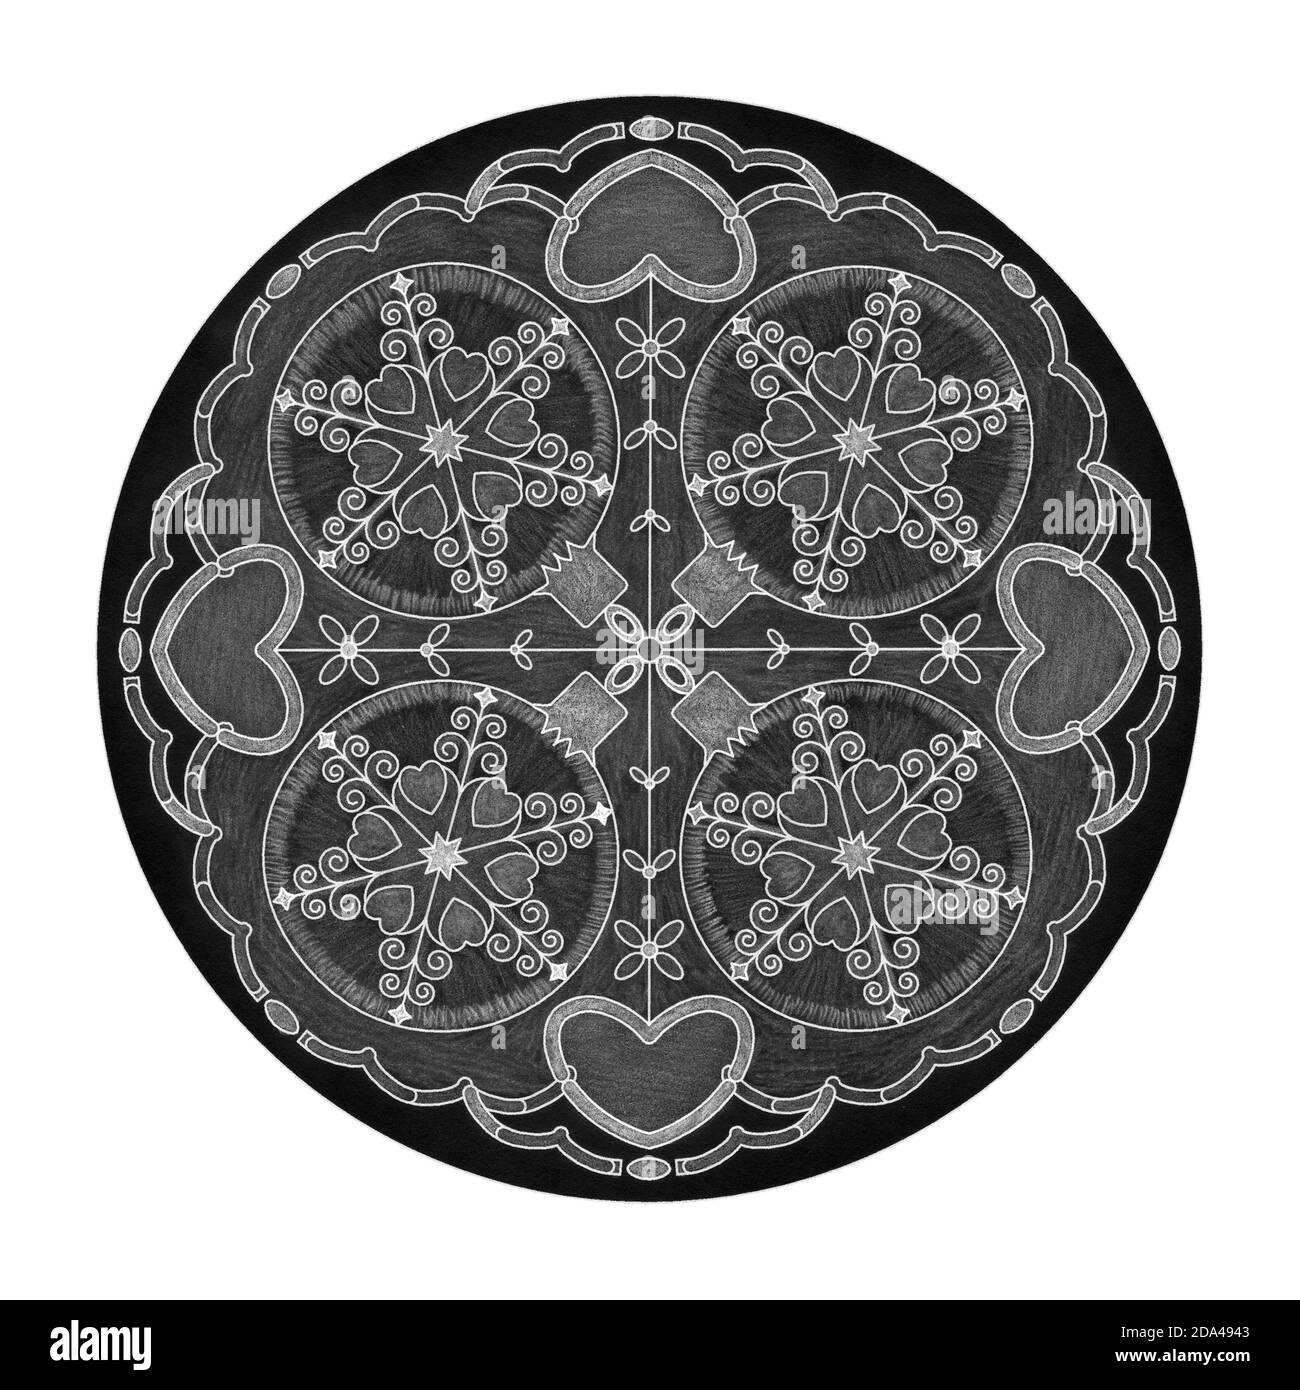 Buntstifteffekte. Weihnachtsthema. Mandala Illustration schwarz, weiß und grau. Weihnachtskugel und Herz. Stockfoto